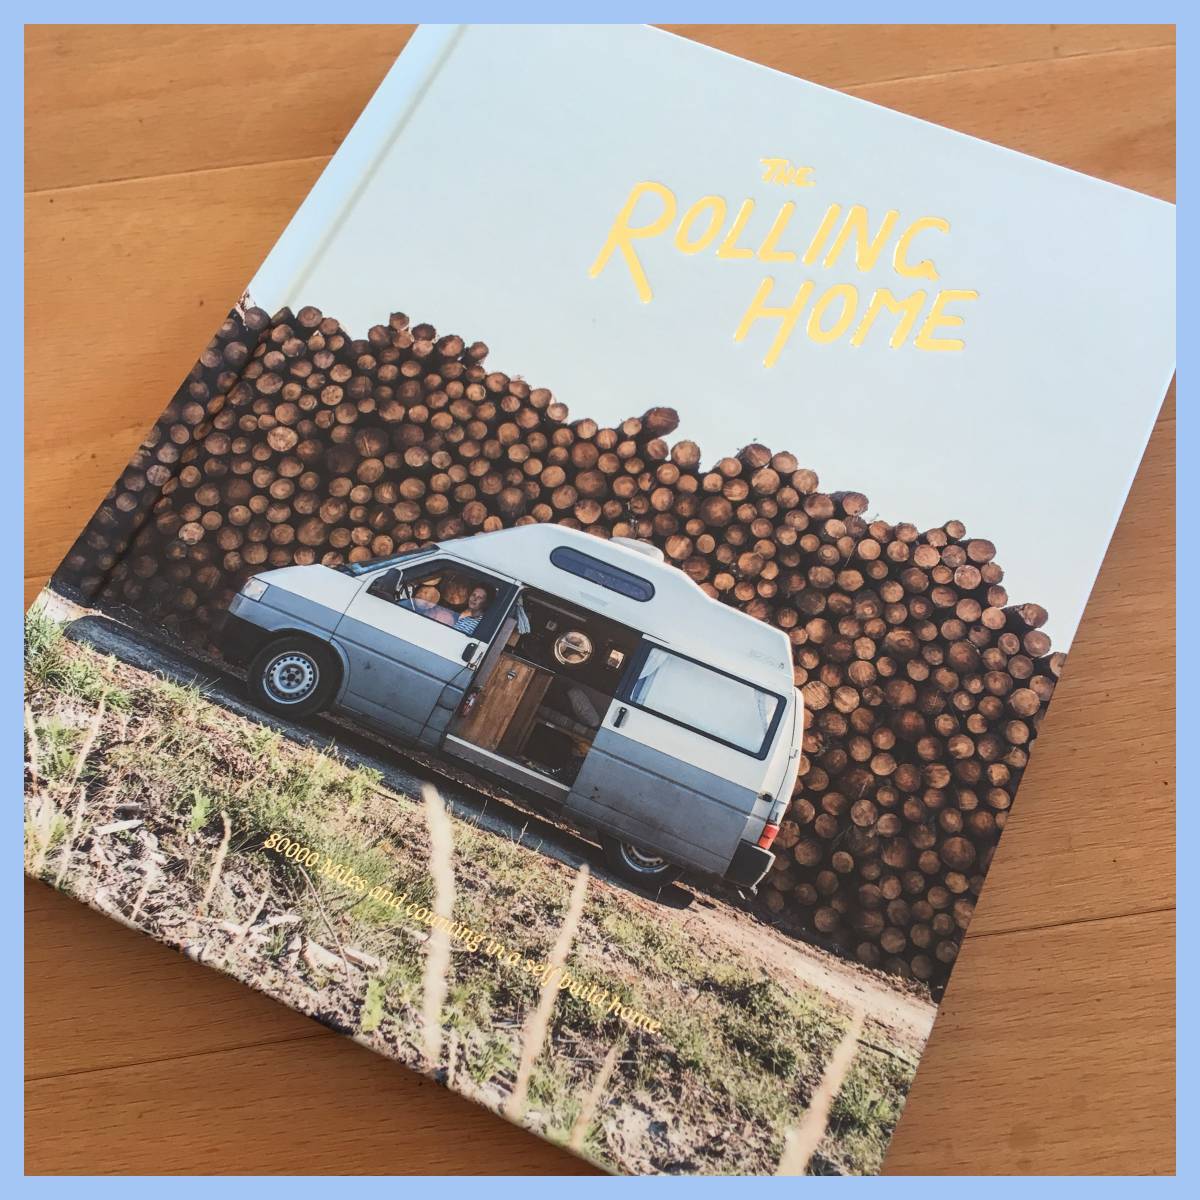 バンライフ希少洋書★【The Rolling Home】80000 Miles and Counting in a Selfbuild Home/ノマドワーカー/Van Life